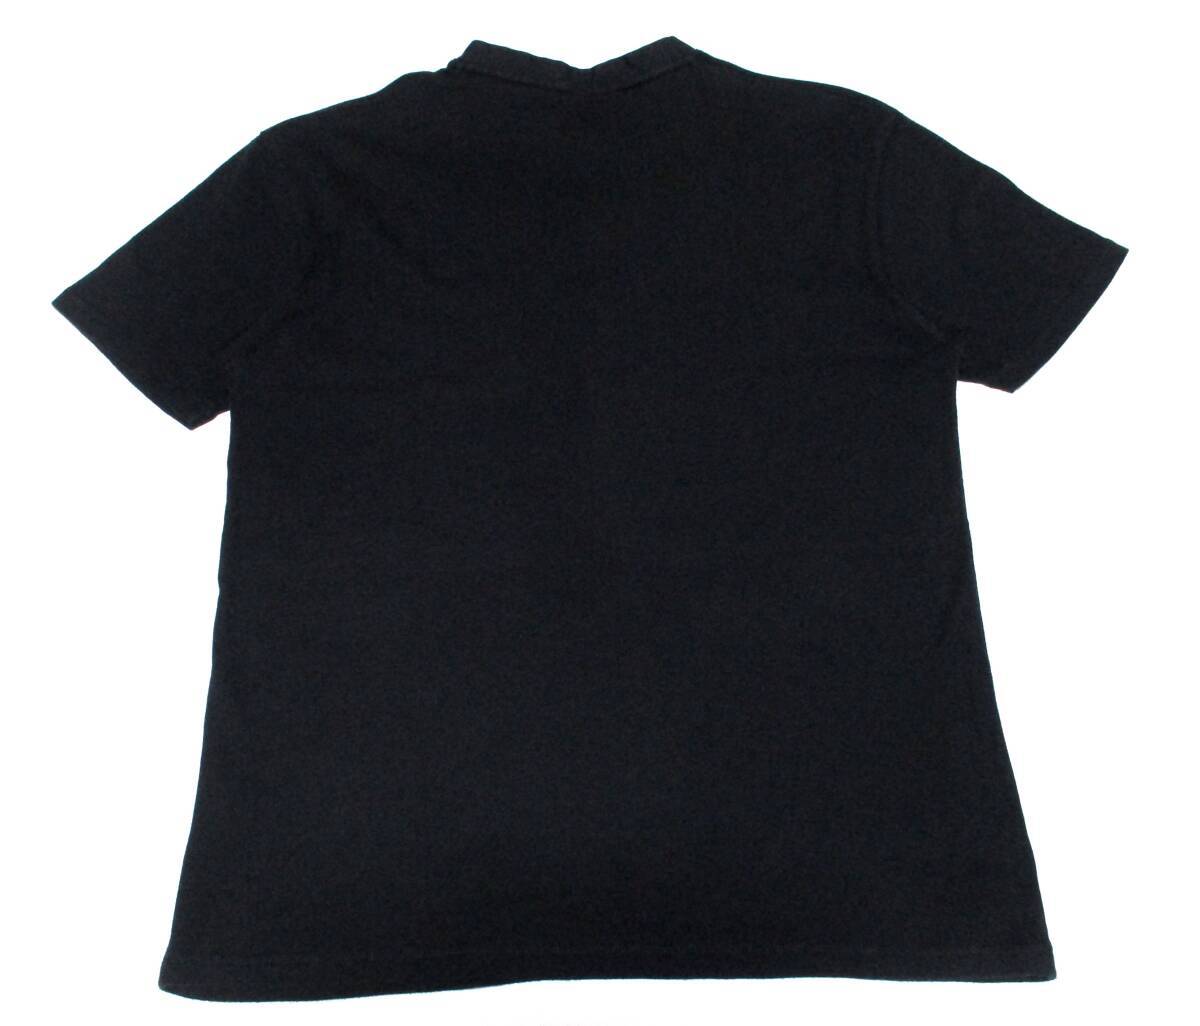 大人気サイズ L(3) バーバリーブラックレーベル ホワイトホース刺繍 前立てノバチェックデザイン ヘンリーネック Tシャツの画像3